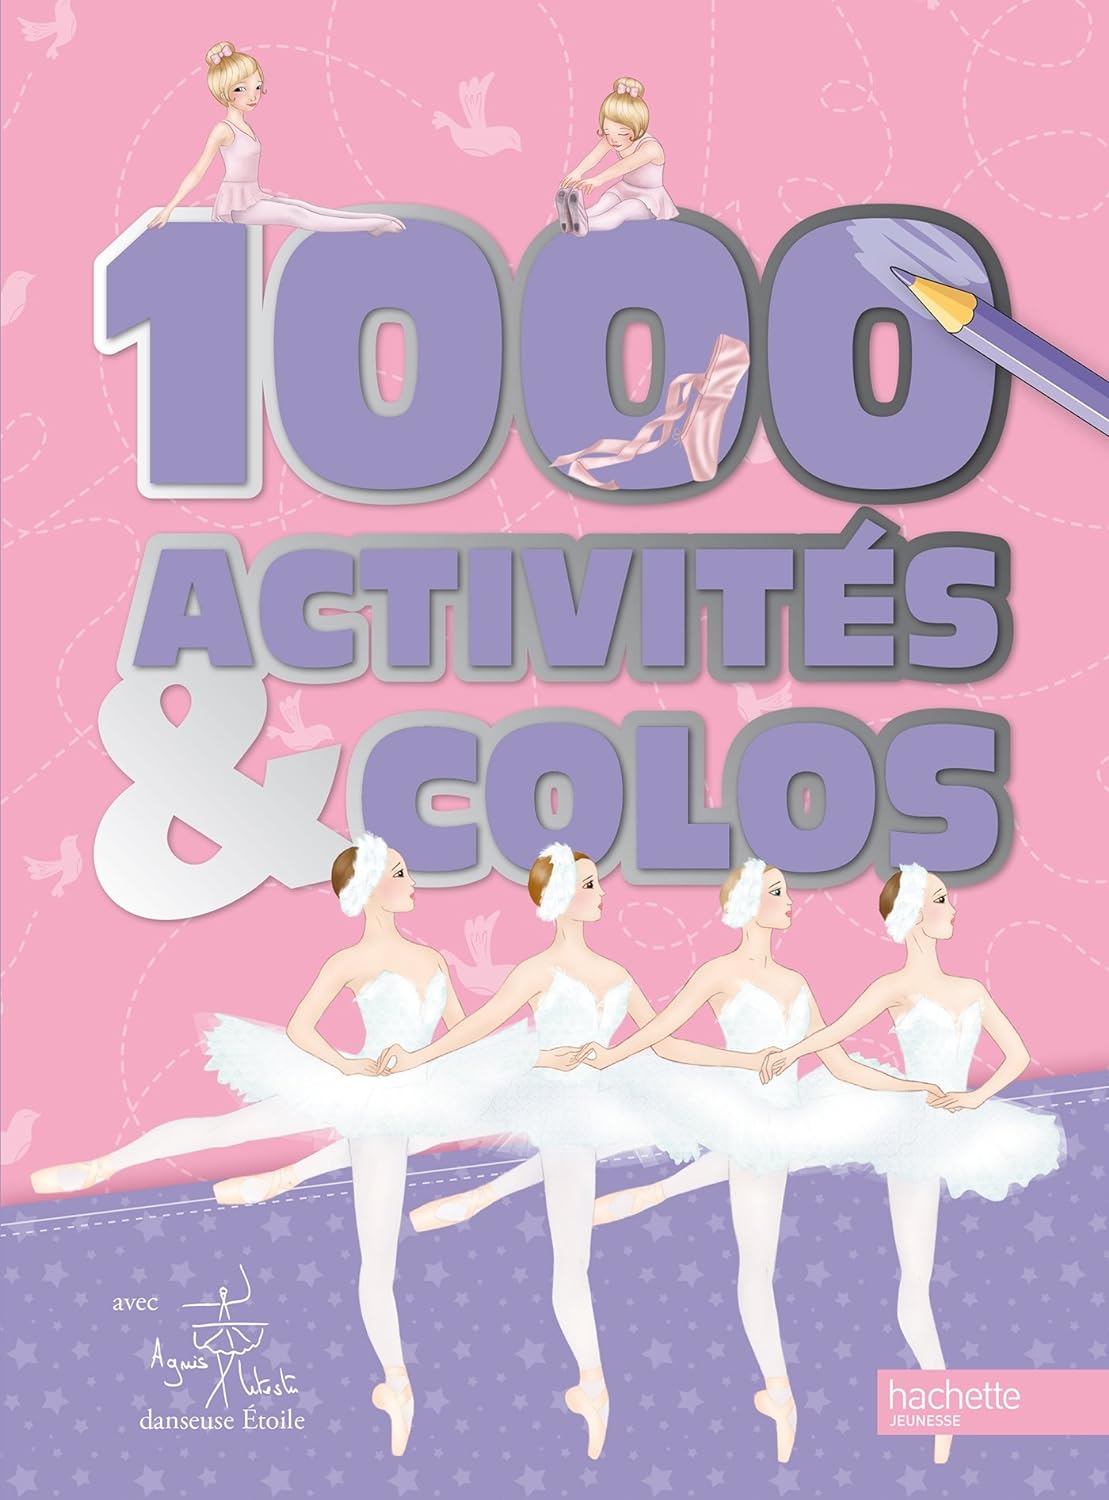 1000 activités et colos